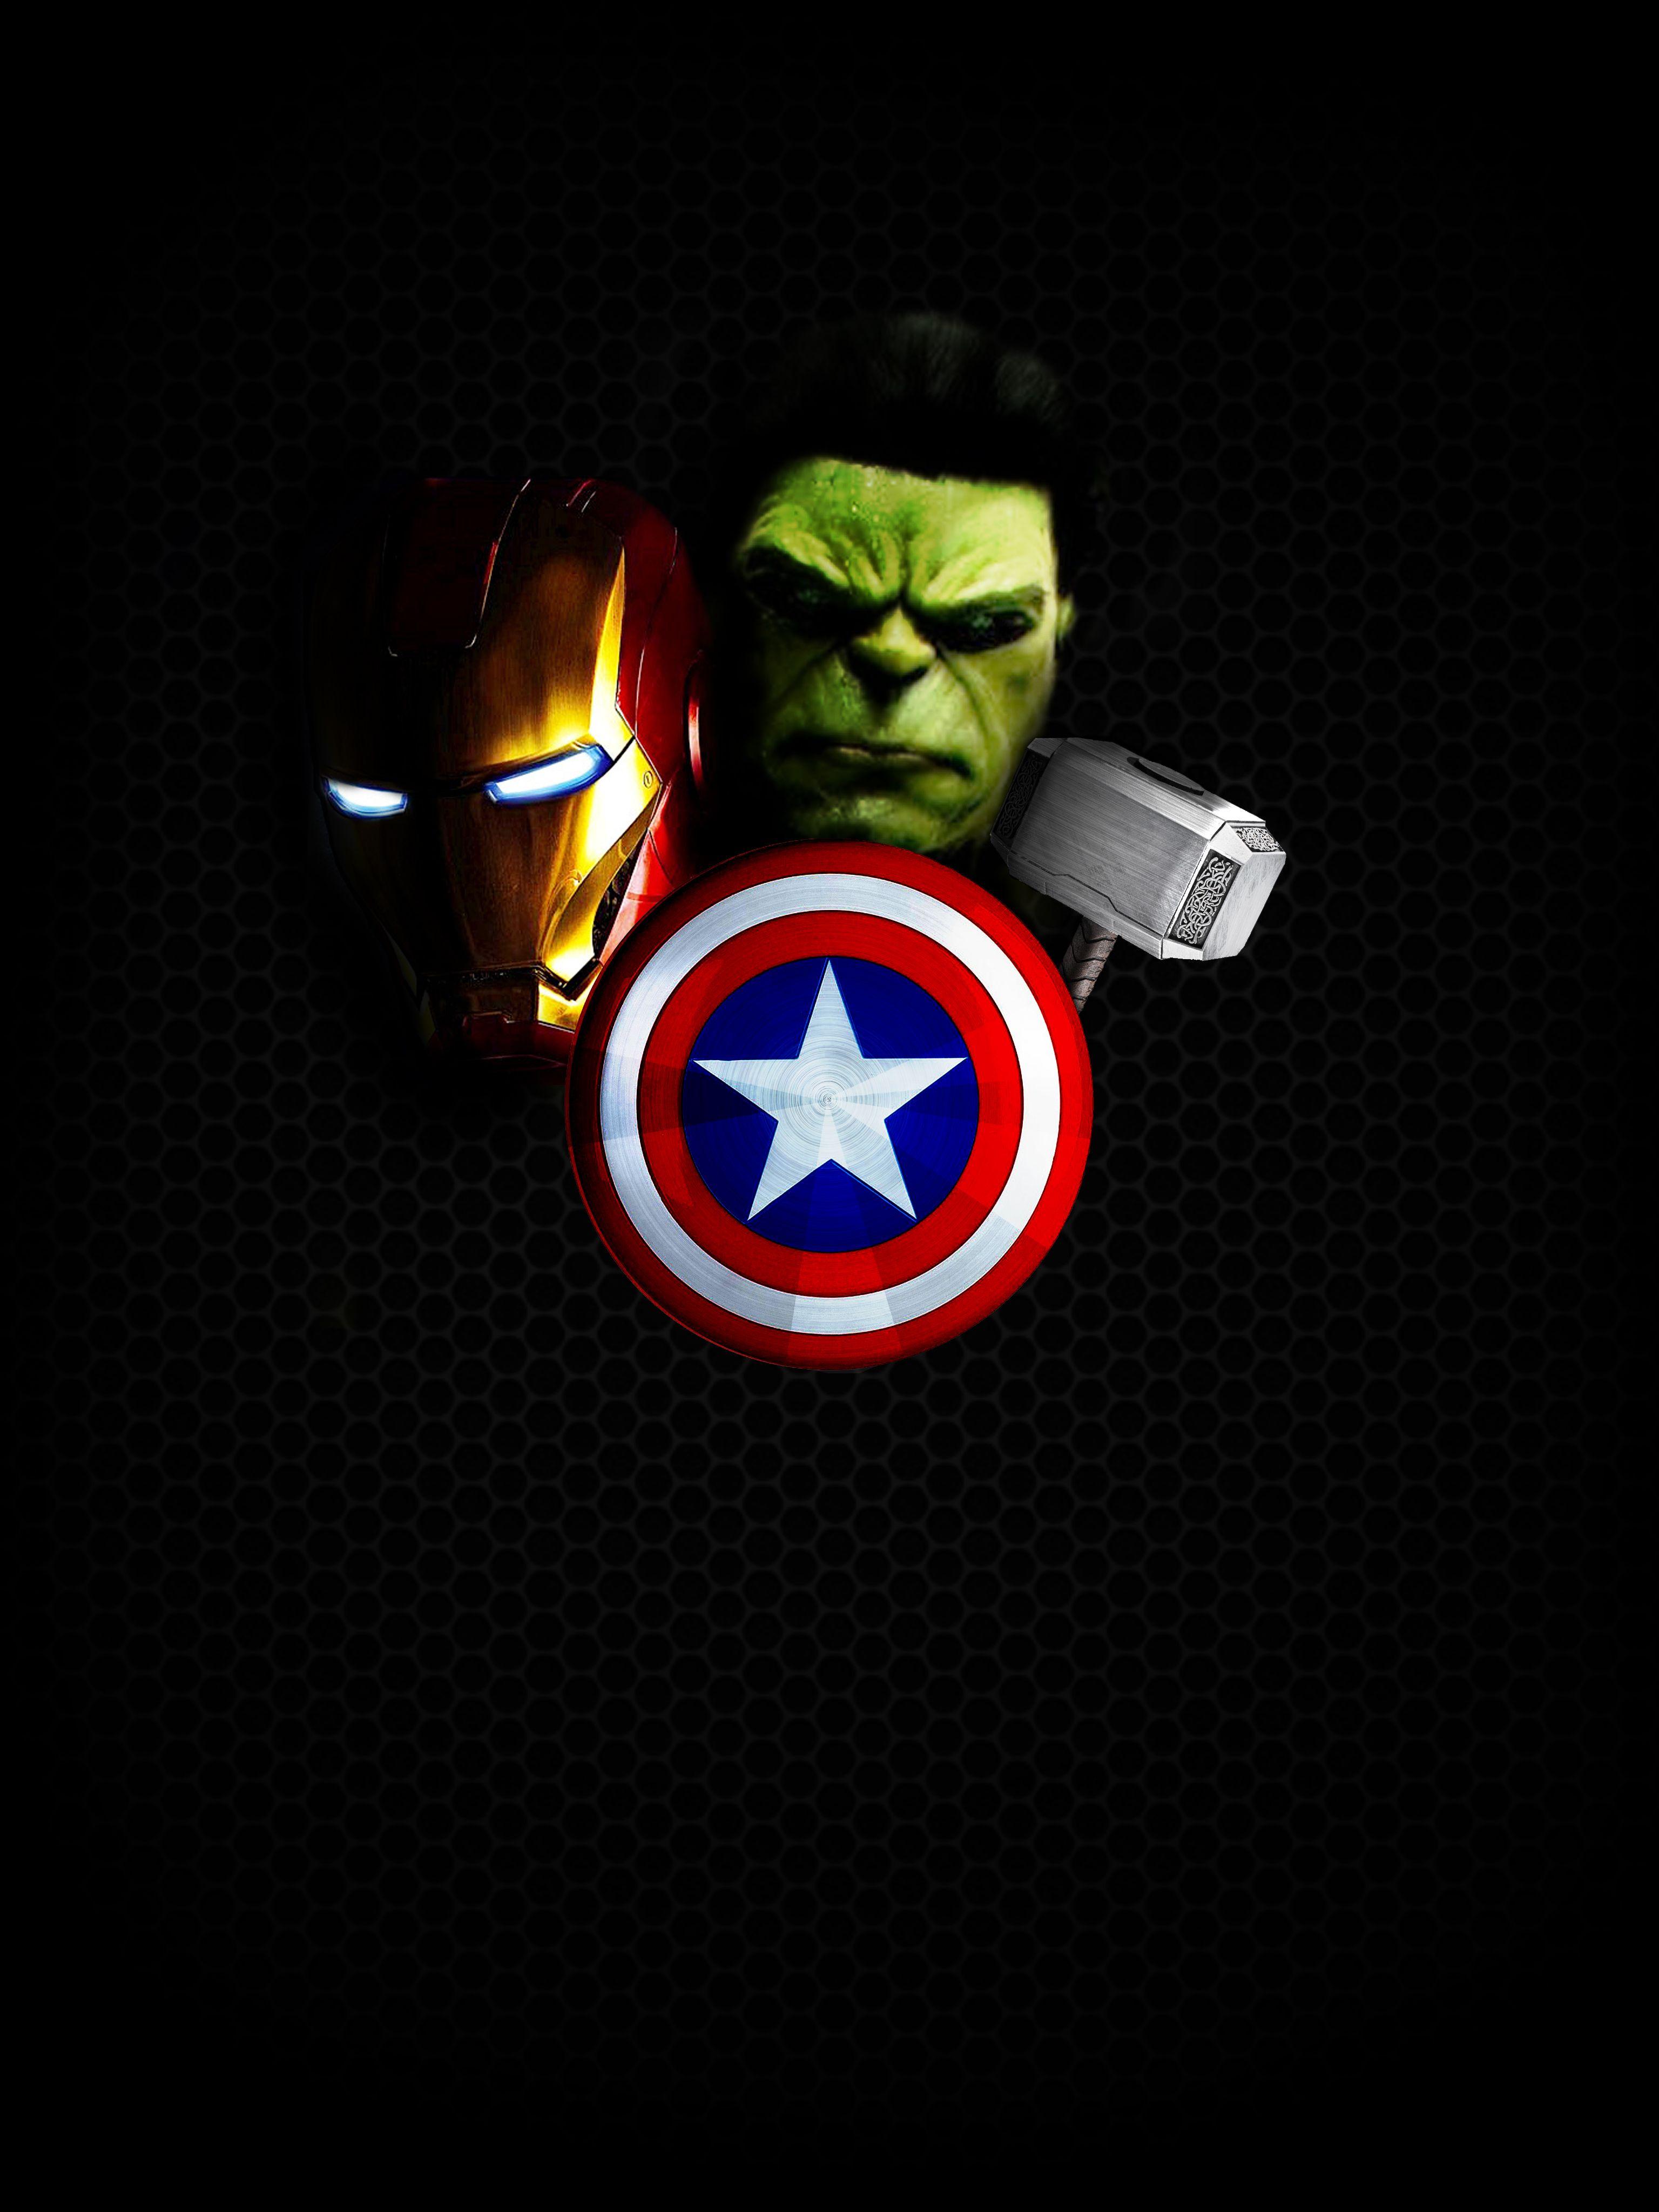 Avengers Full Hd Mobile Wallpaper